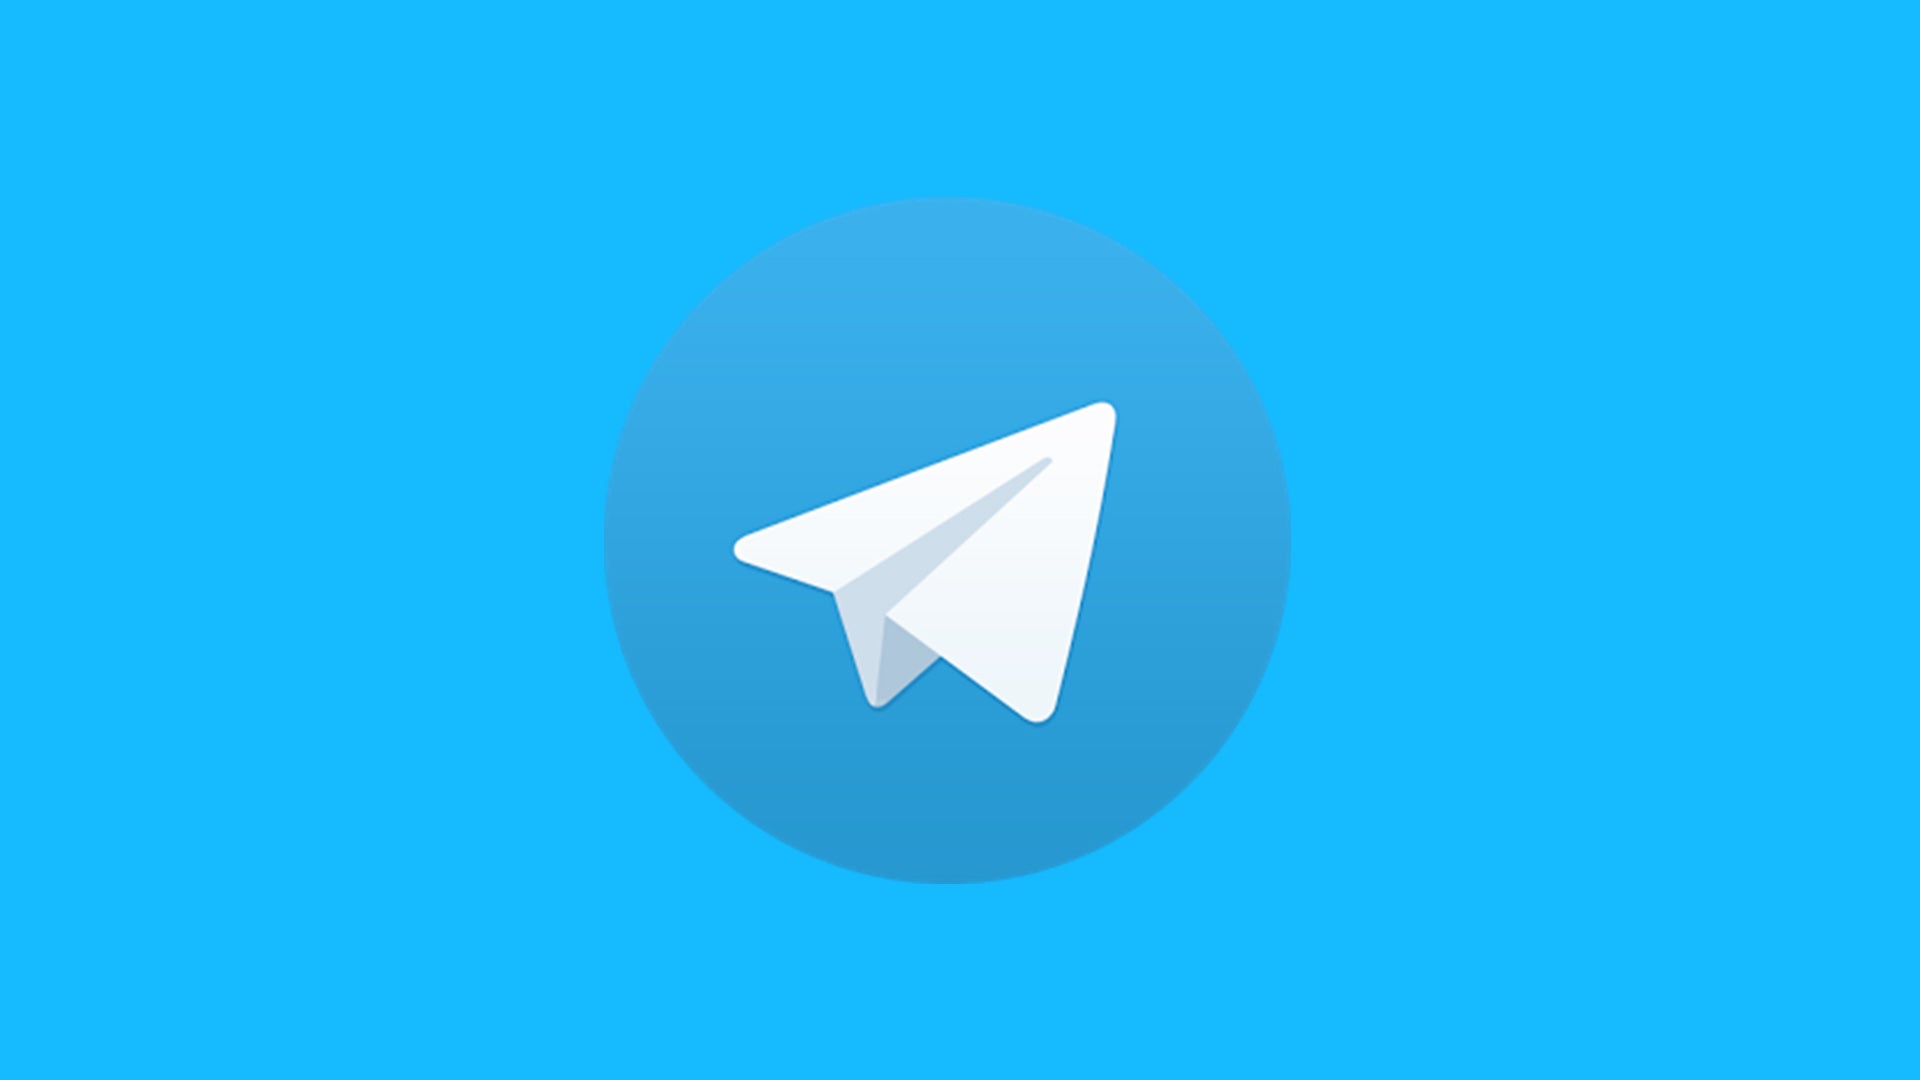 3.​ 提升Telegram购买账号经验：倡导合法合规、保护个人隐私